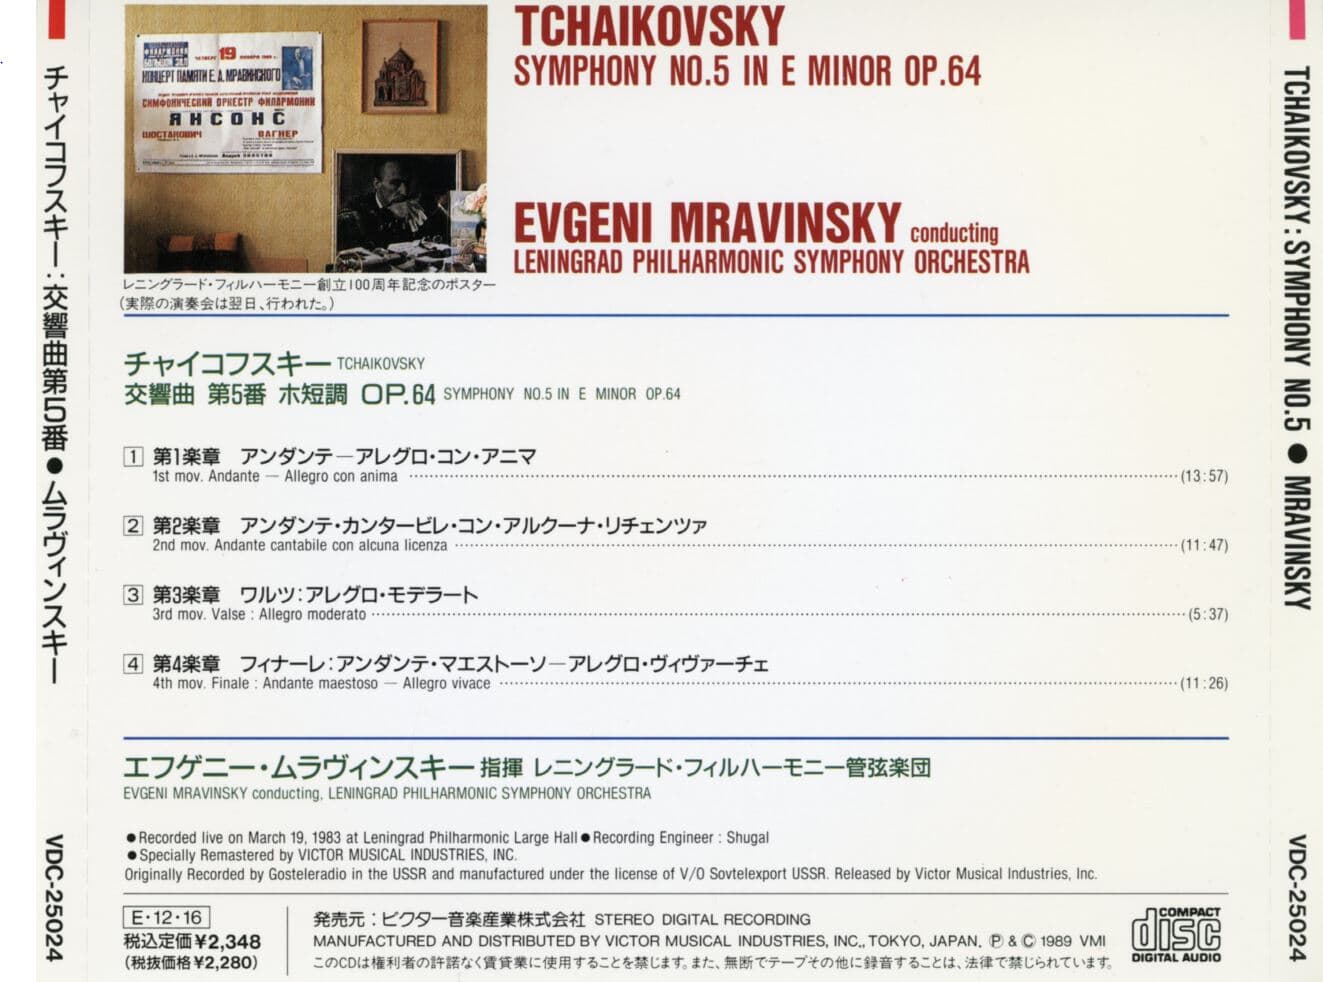 예프게니 므라빈스키 - Evgeni Mravinsky - Tchaikovsky Symphony No.5 In E Minor Op.64 [일본발매]